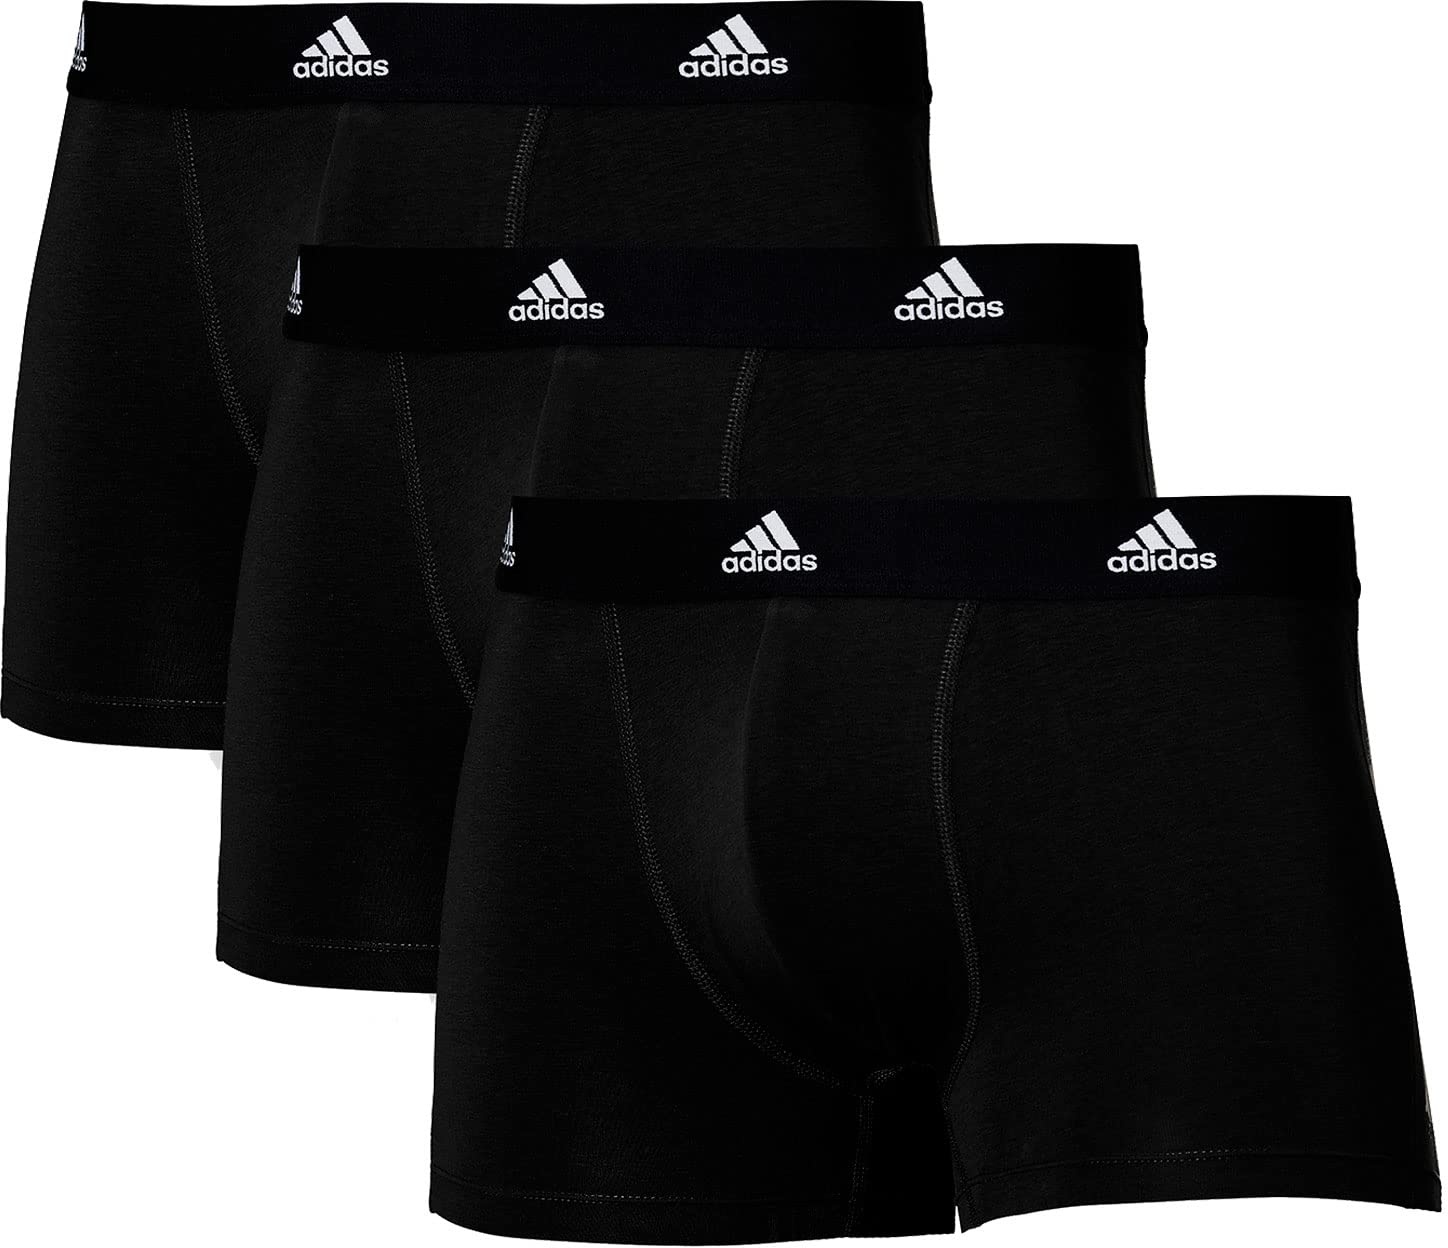 Adidas Boxershorts Herren (3er Pack) Unterhosen (Gr. S - 3XL) - bequeme Unterhosen, Schwarz 1, S